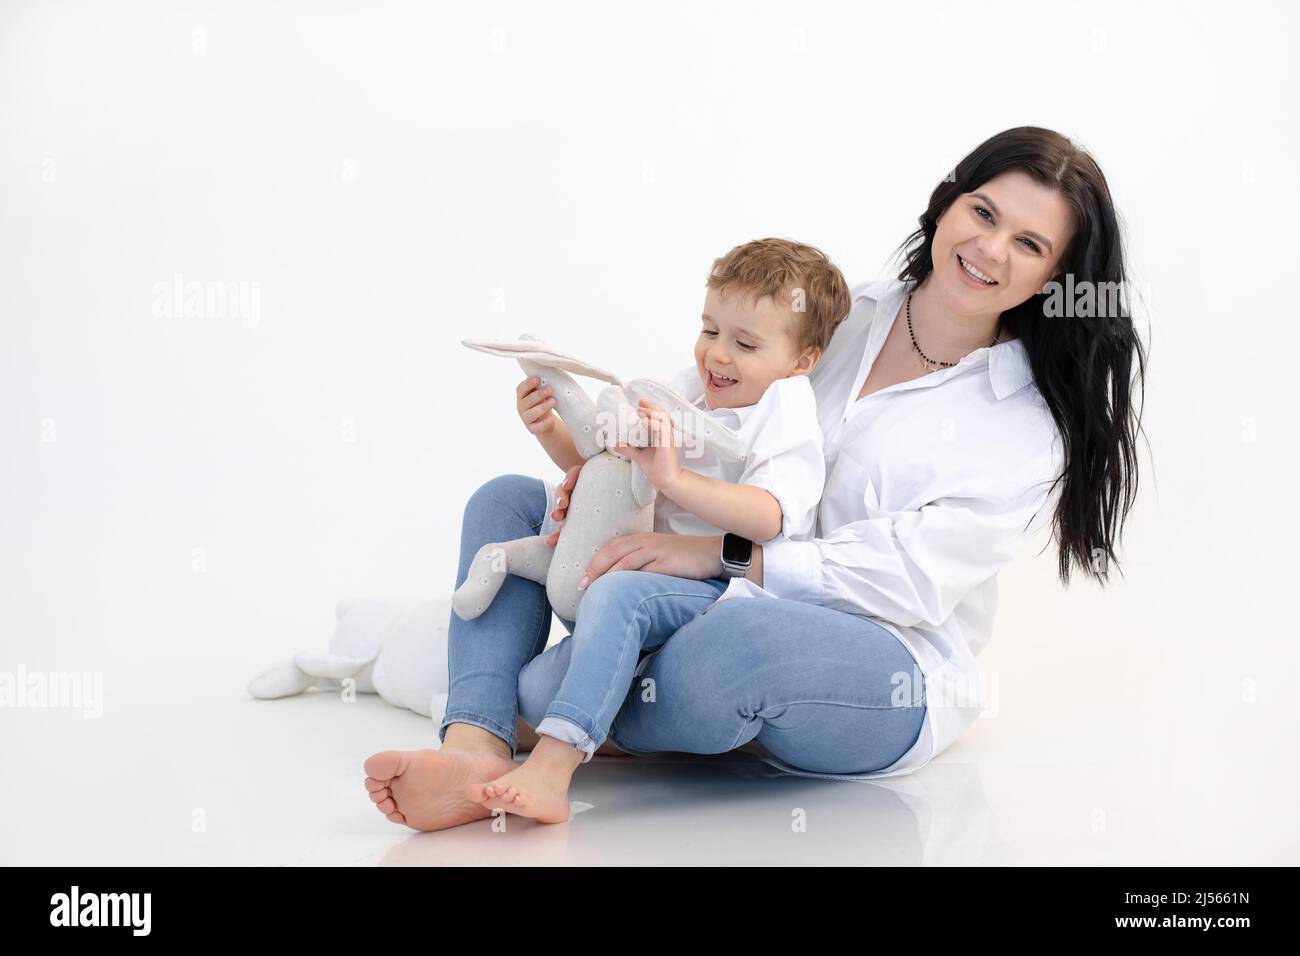 Porträt einer fröhlichen Frau, die mit einem kleinen Jungen spielt, ein weiches Spielzeug-Kaninchen hält und auf dem Boden sitzt. Gemeinsam spielen. Speicherplatz kopieren Stockfoto